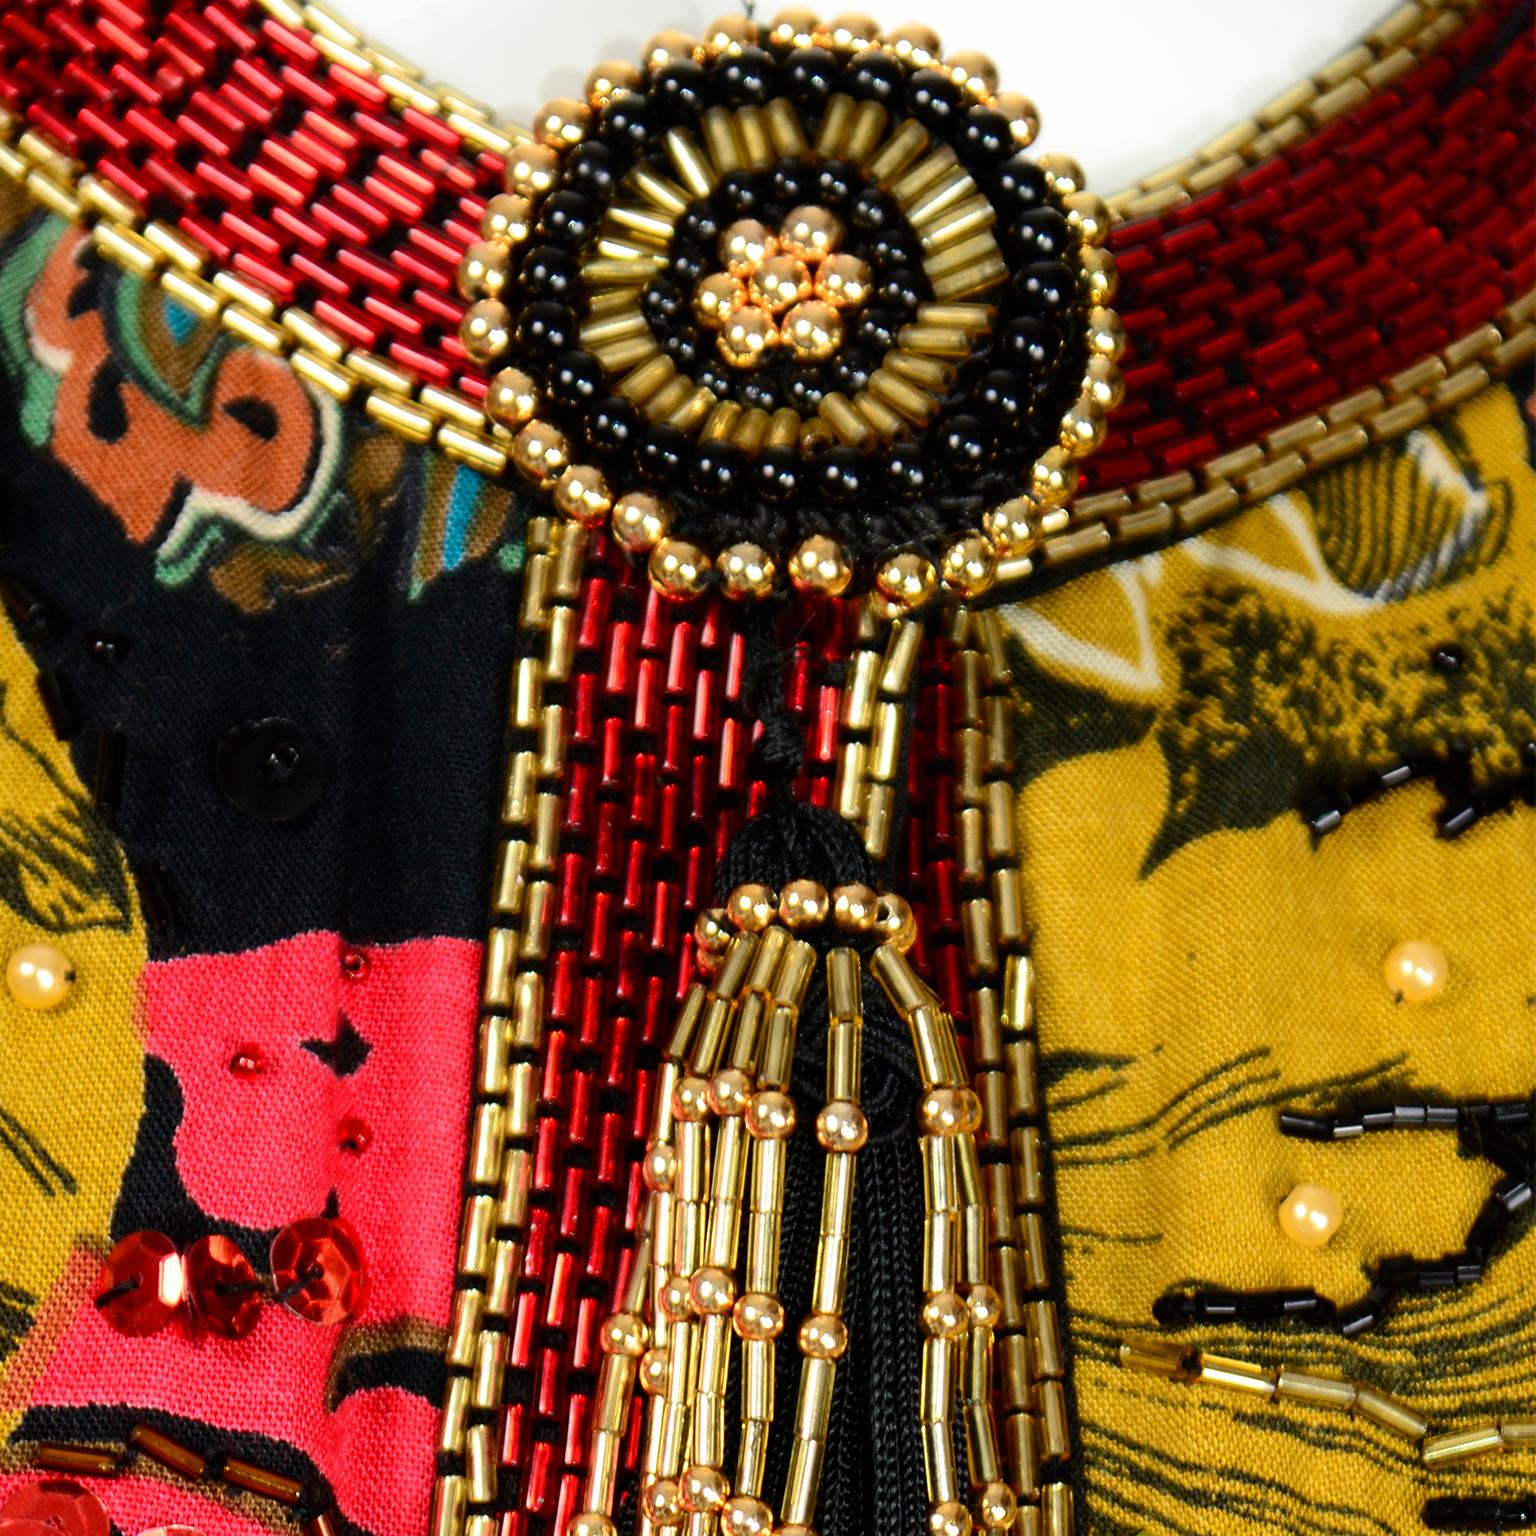 Vintage Diane Freis Beaded Sequin Swing Jacket in Multi Colored Baroque Print 6